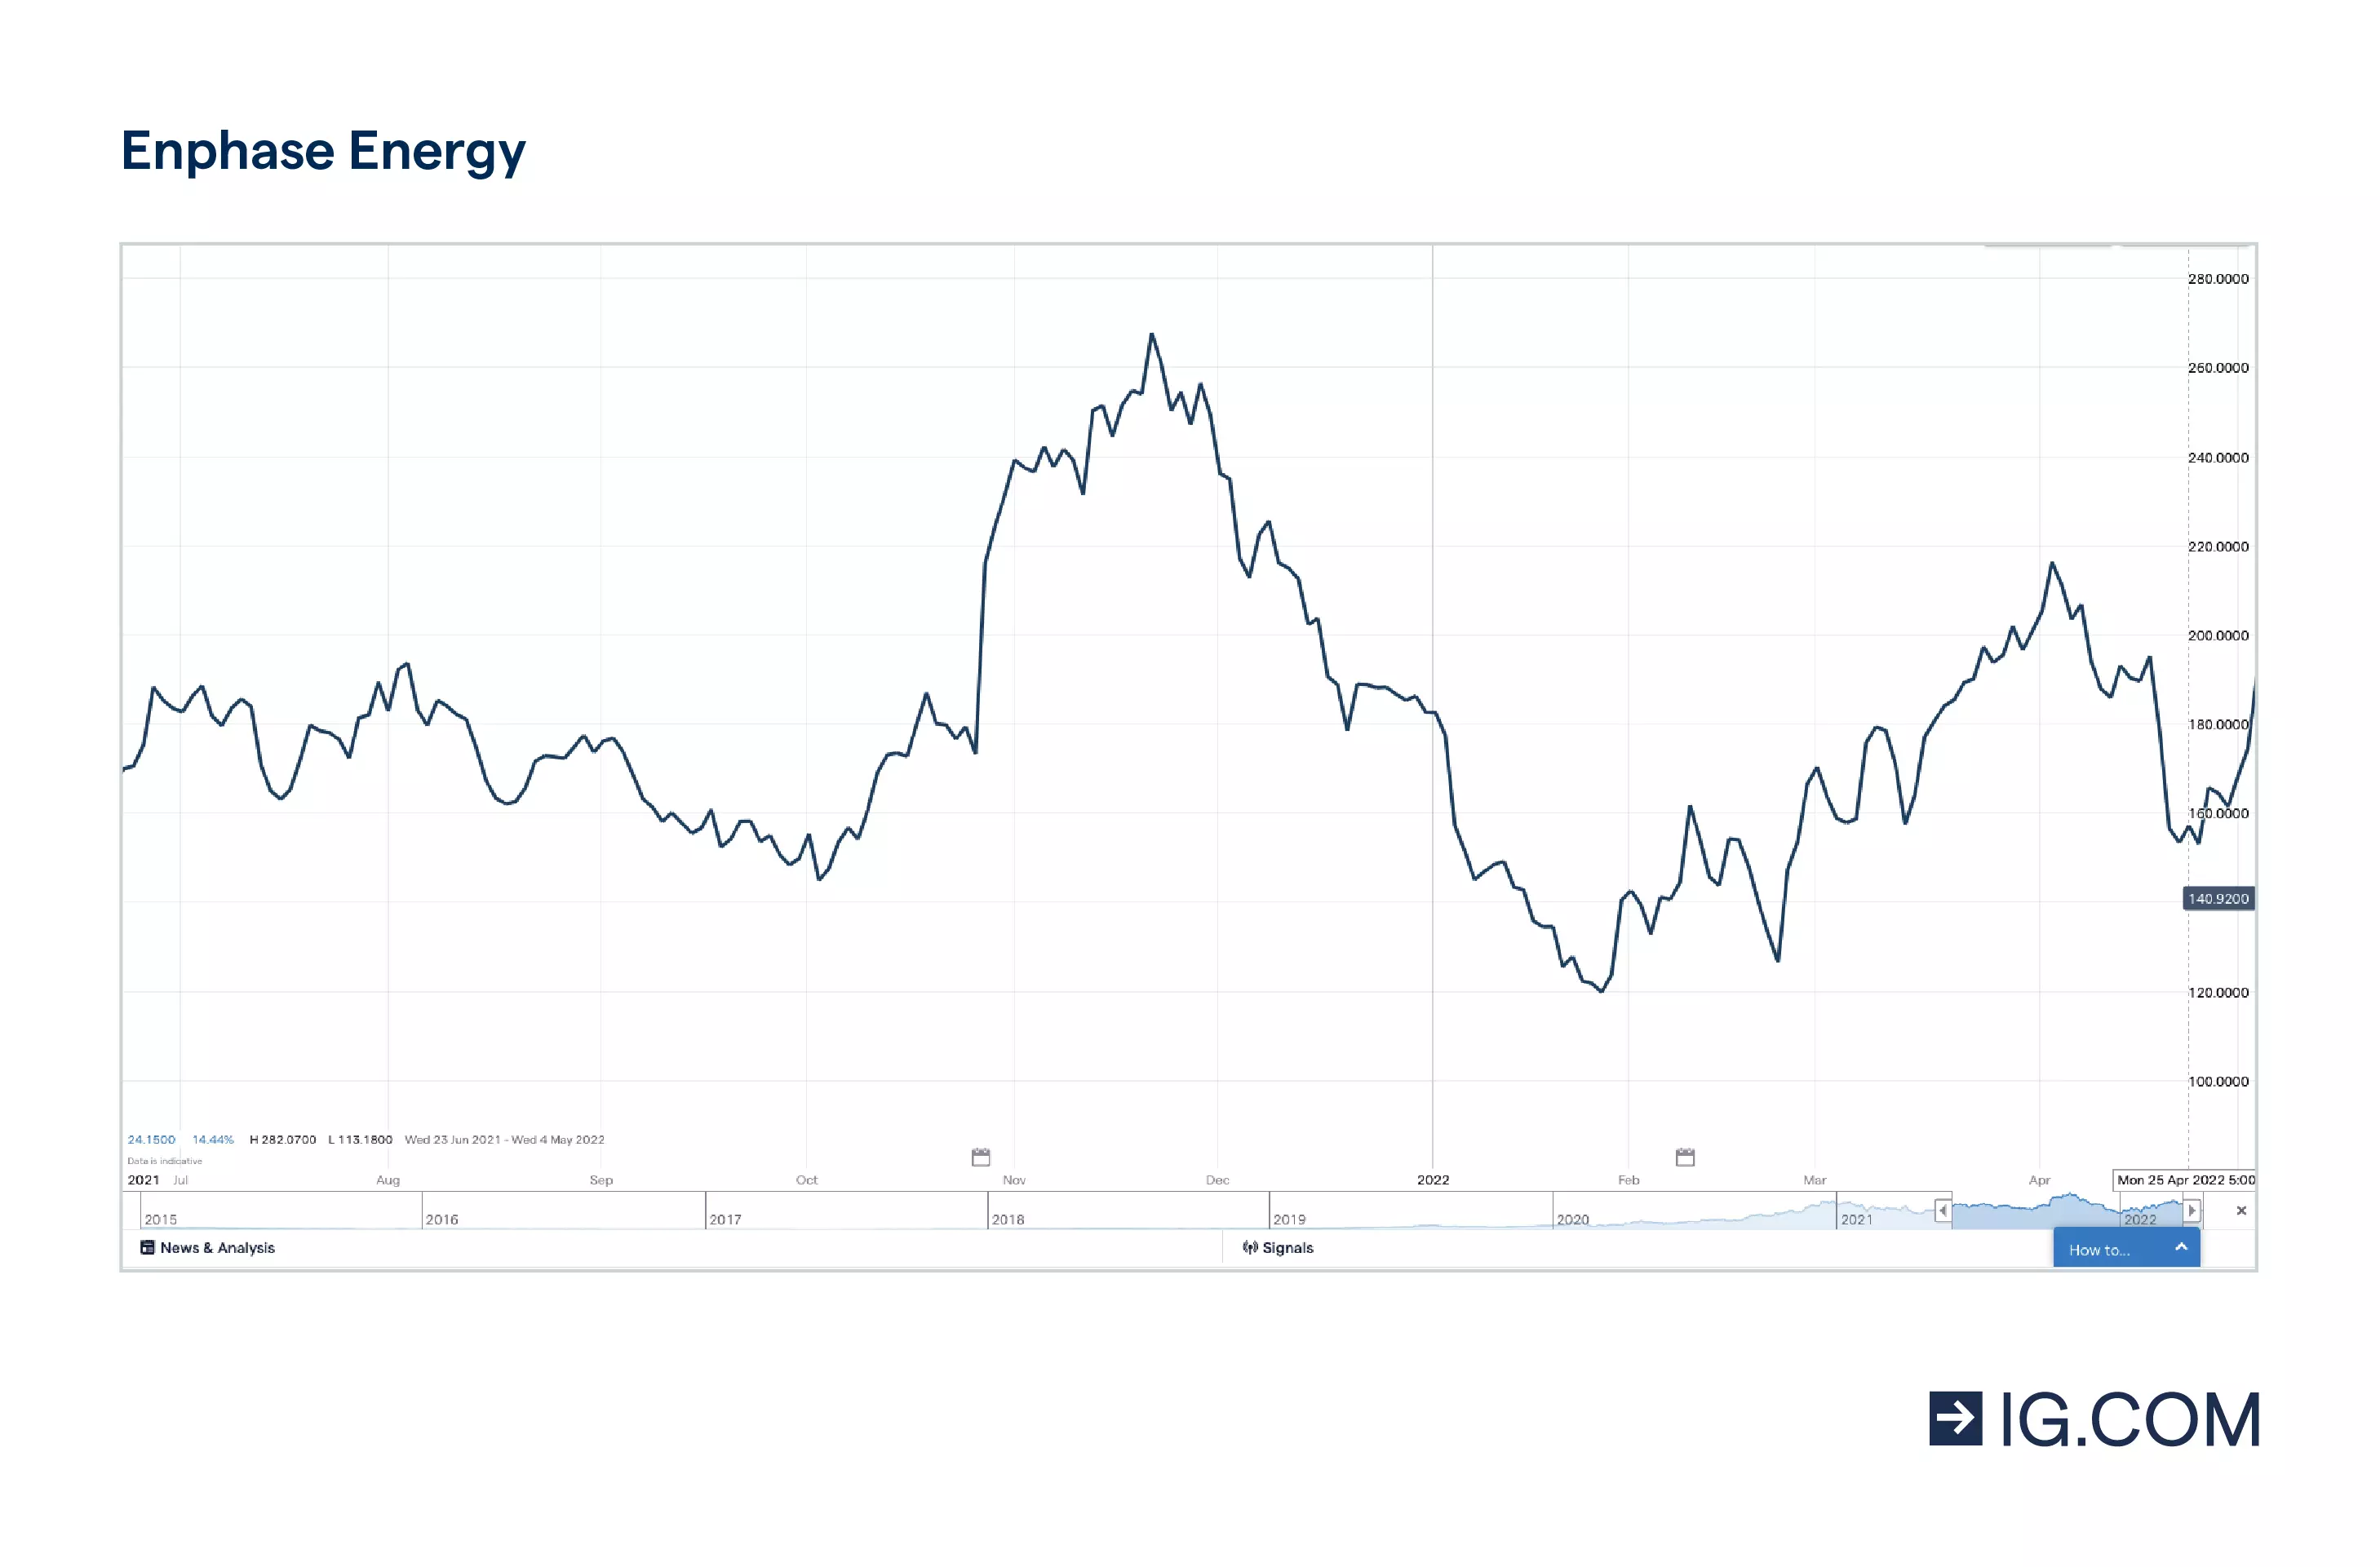 Las acciones de Enphase Energy durante un periodo de un año, alcanzando diferentes niveles de precio, tocando techo en 282,46 en noviembre de 2021 y después cayendo ligeramente, con la cotización de la acción en 206,95 en abril de 2022.